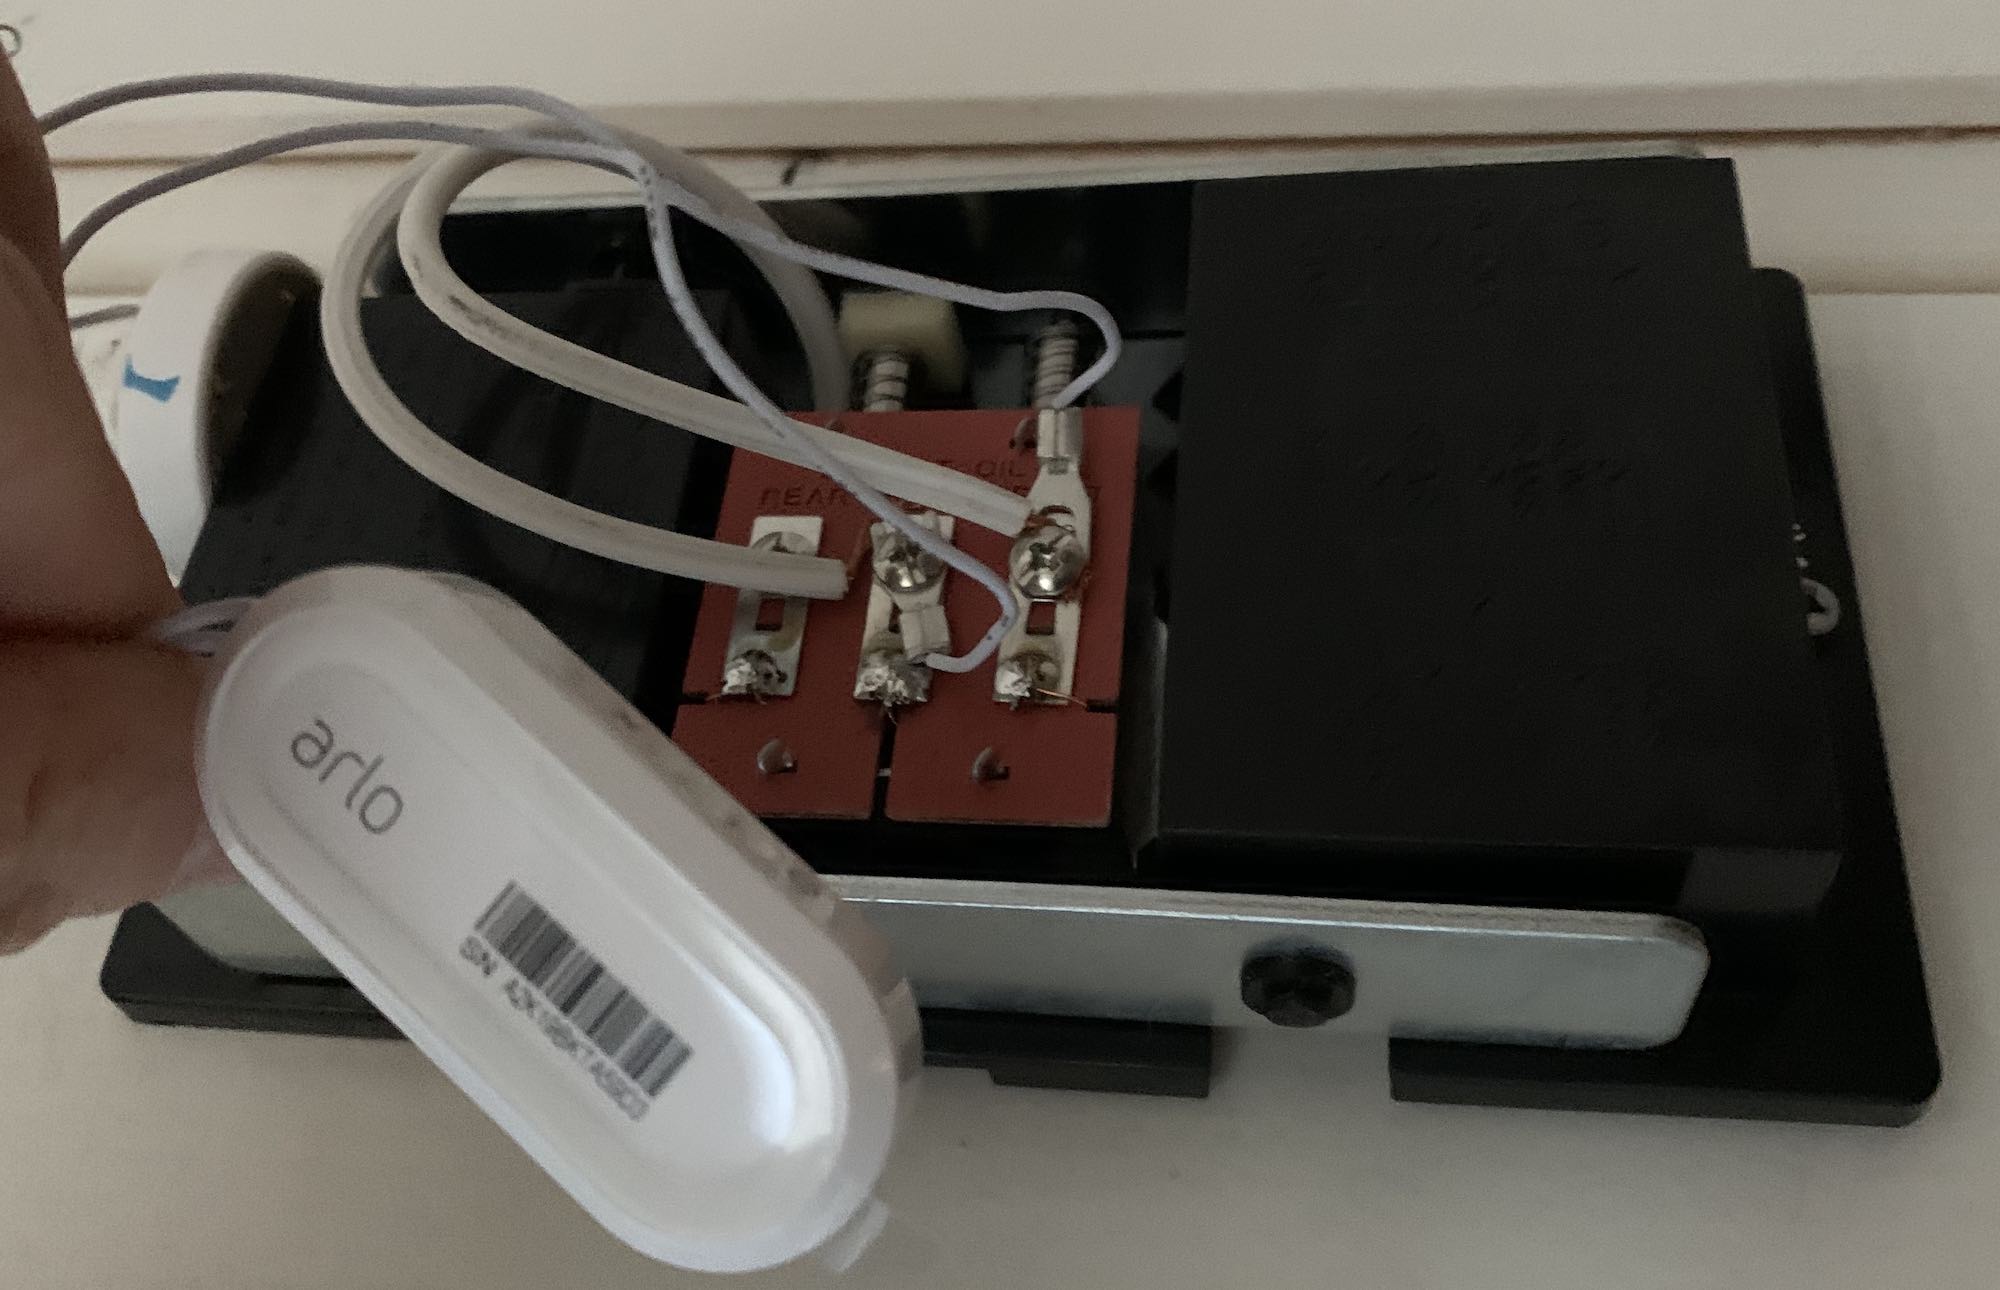 Installing Arlo Video Doorbell